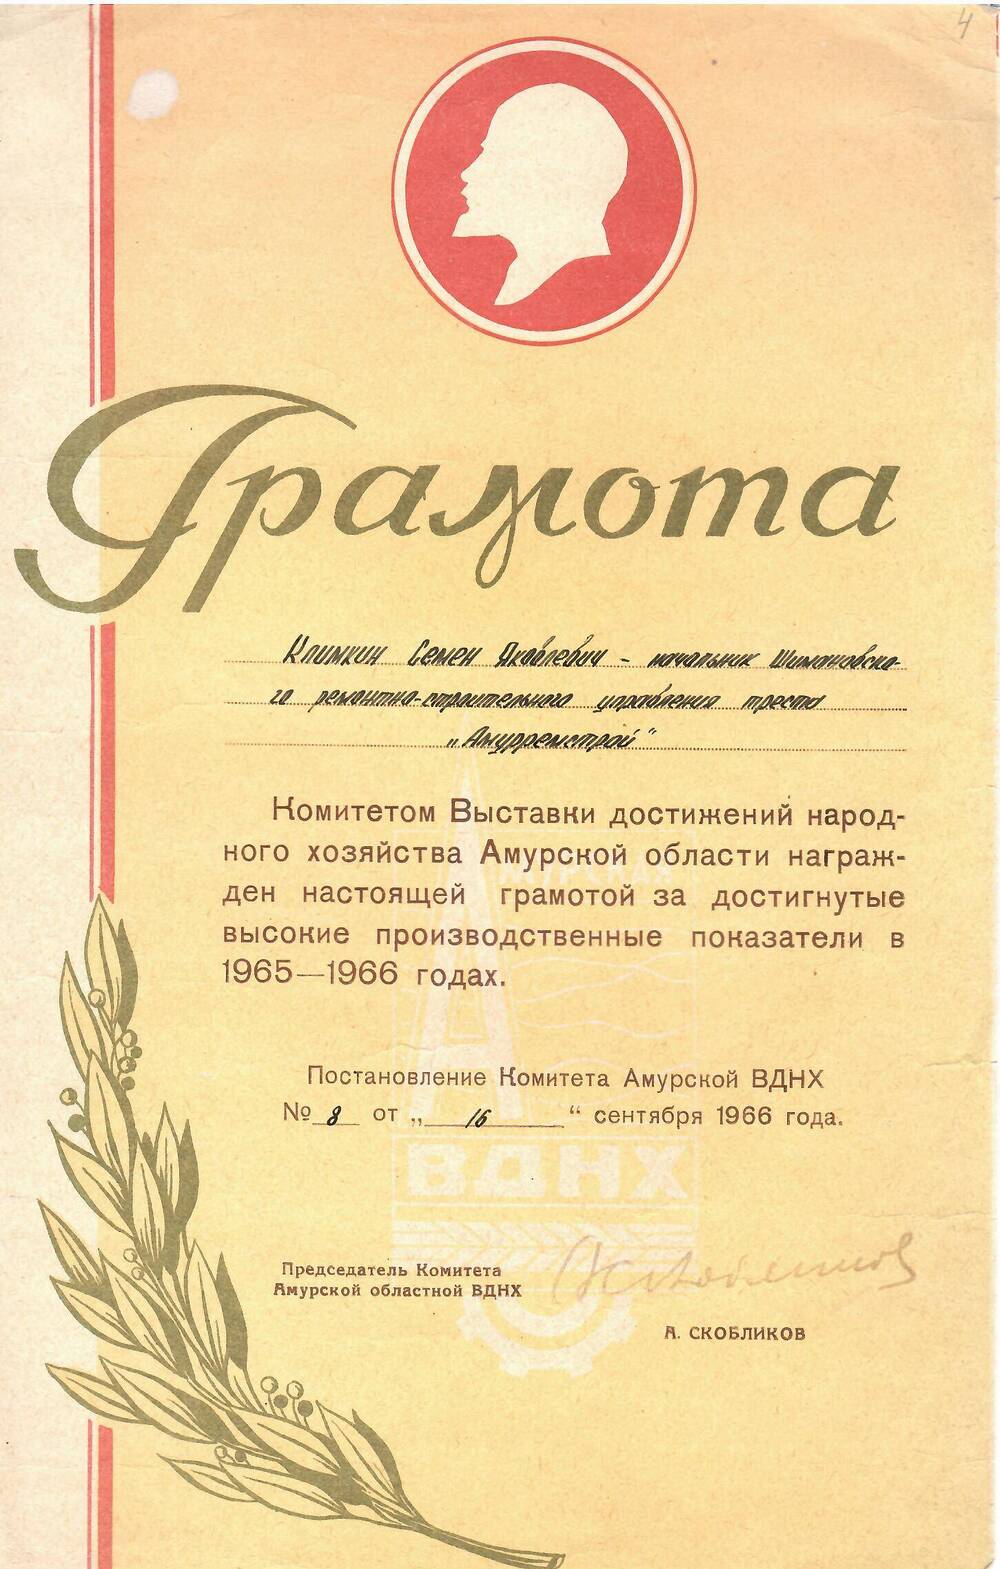 Грамота Климкину Семёну Яковлевичу за достигнутые высокие показатели в 1965-1966 годах